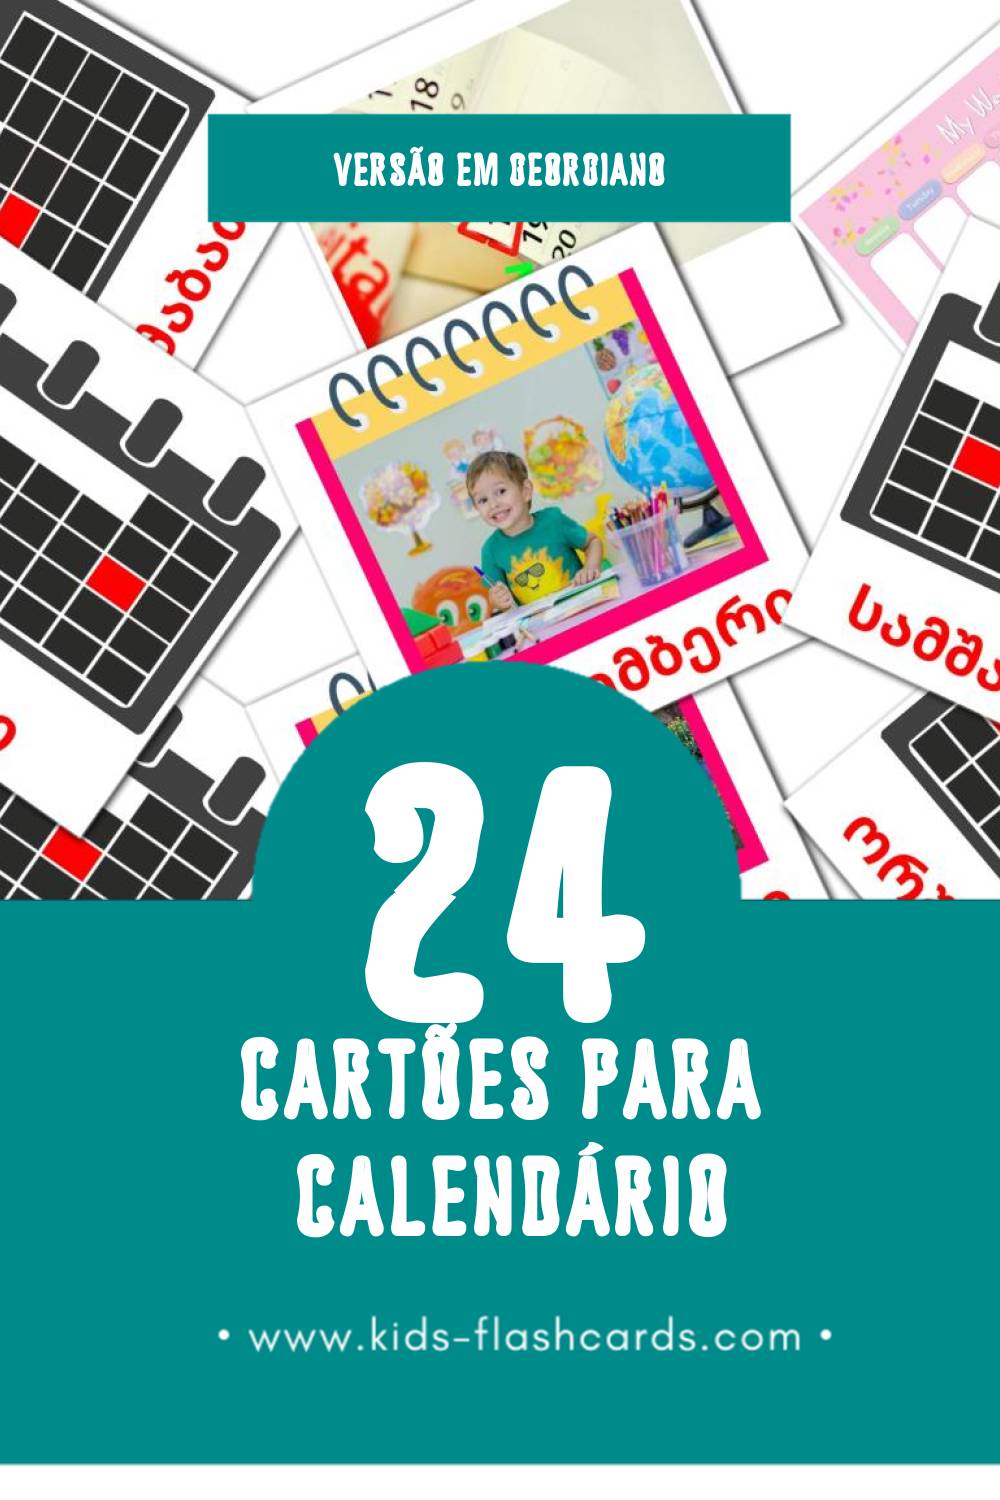 Flashcards de კალენდარი - Kalendar Visuais para Toddlers (24 cartões em Georgiano)